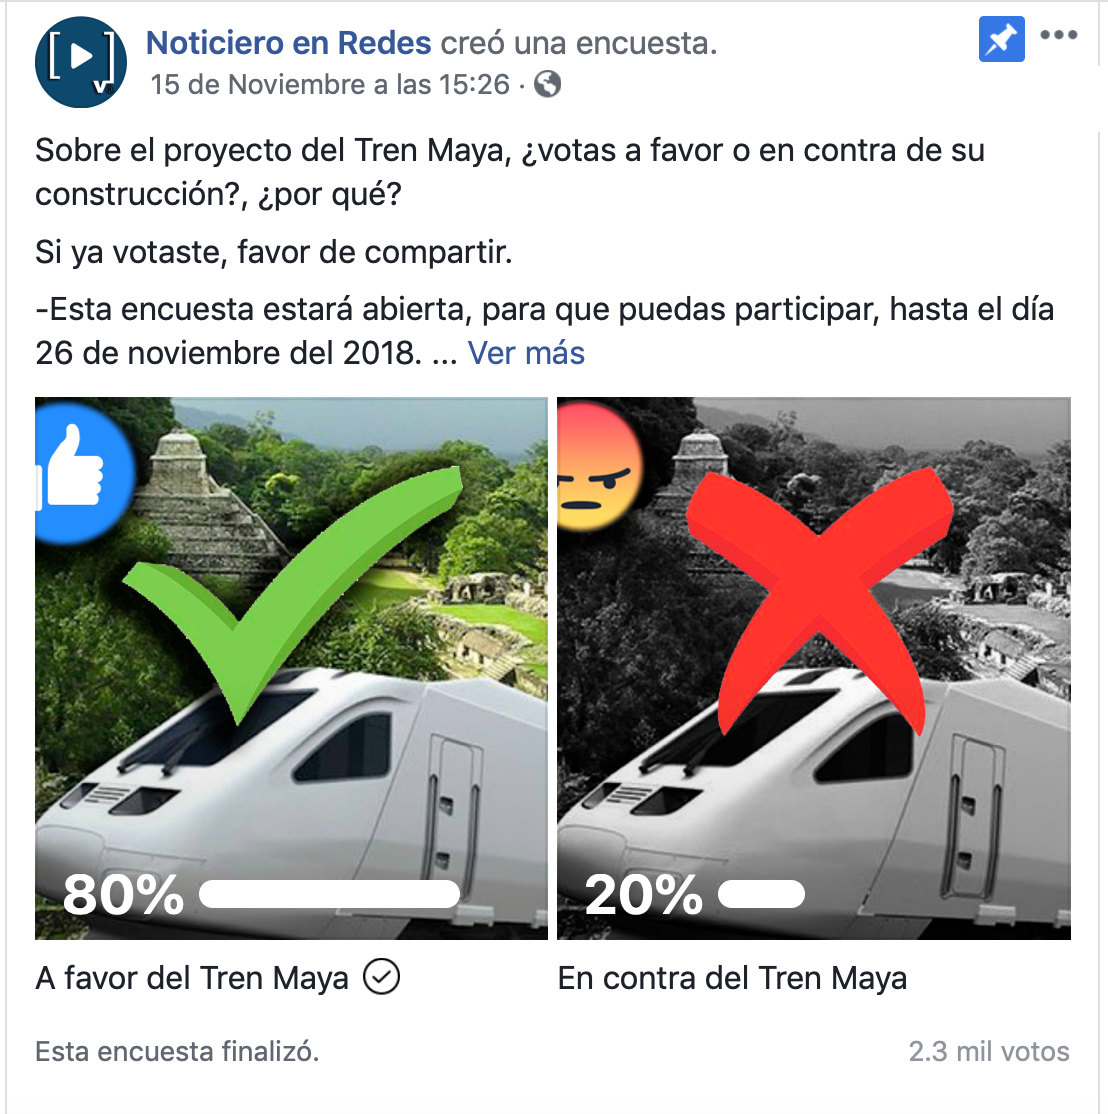 Contundente mayoría a favor de la construcción del Tren Maya en encuesta del Noticiero en Redes